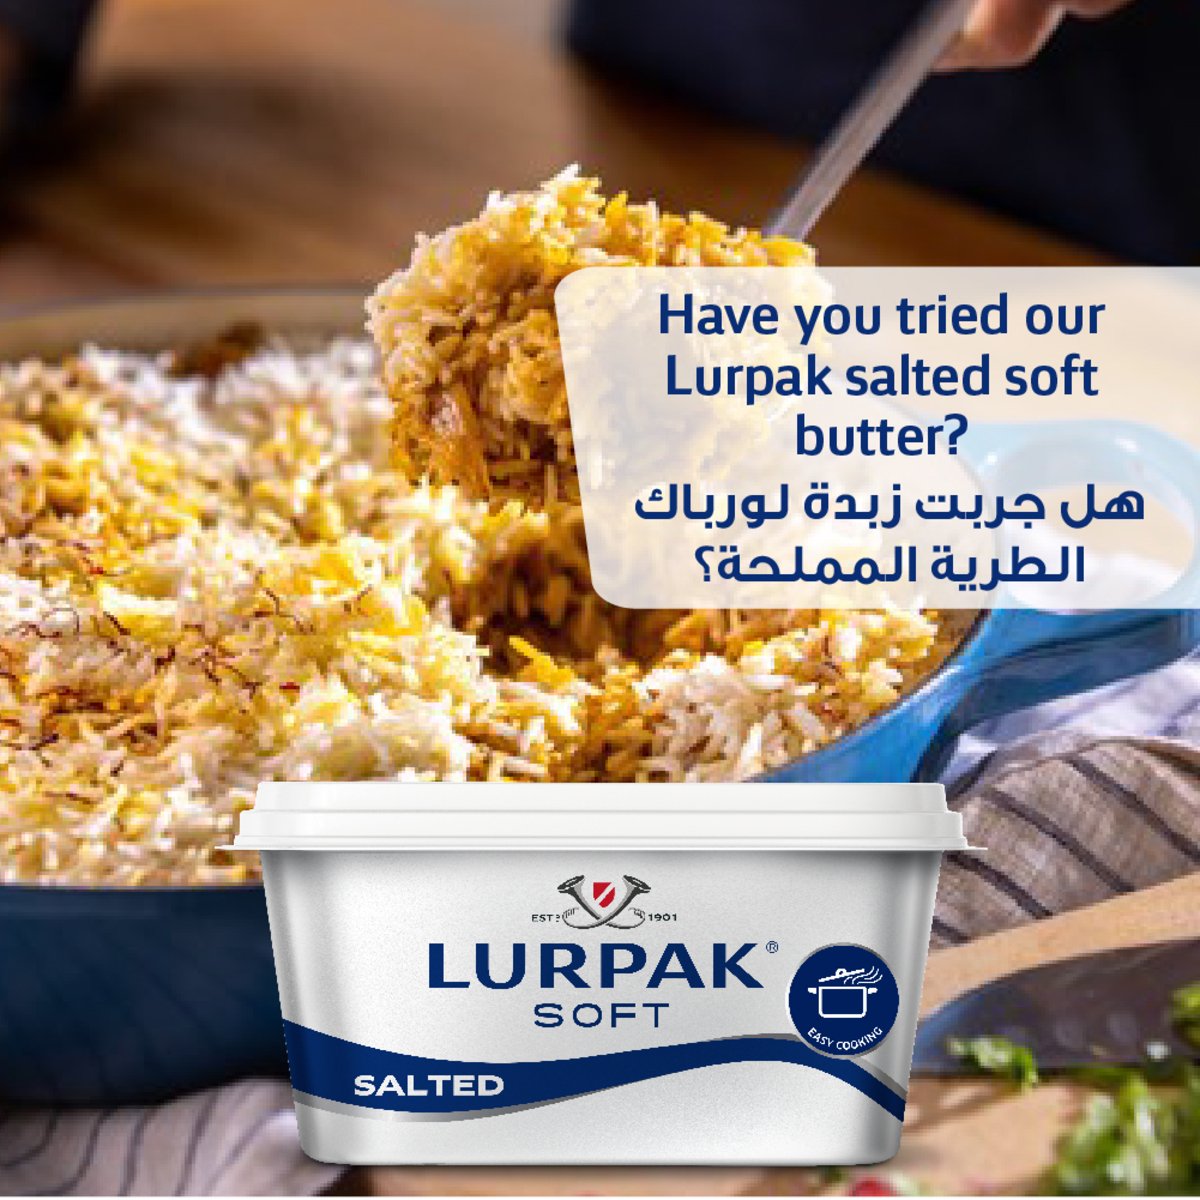 Lurpak Butter Block Salted 400 g